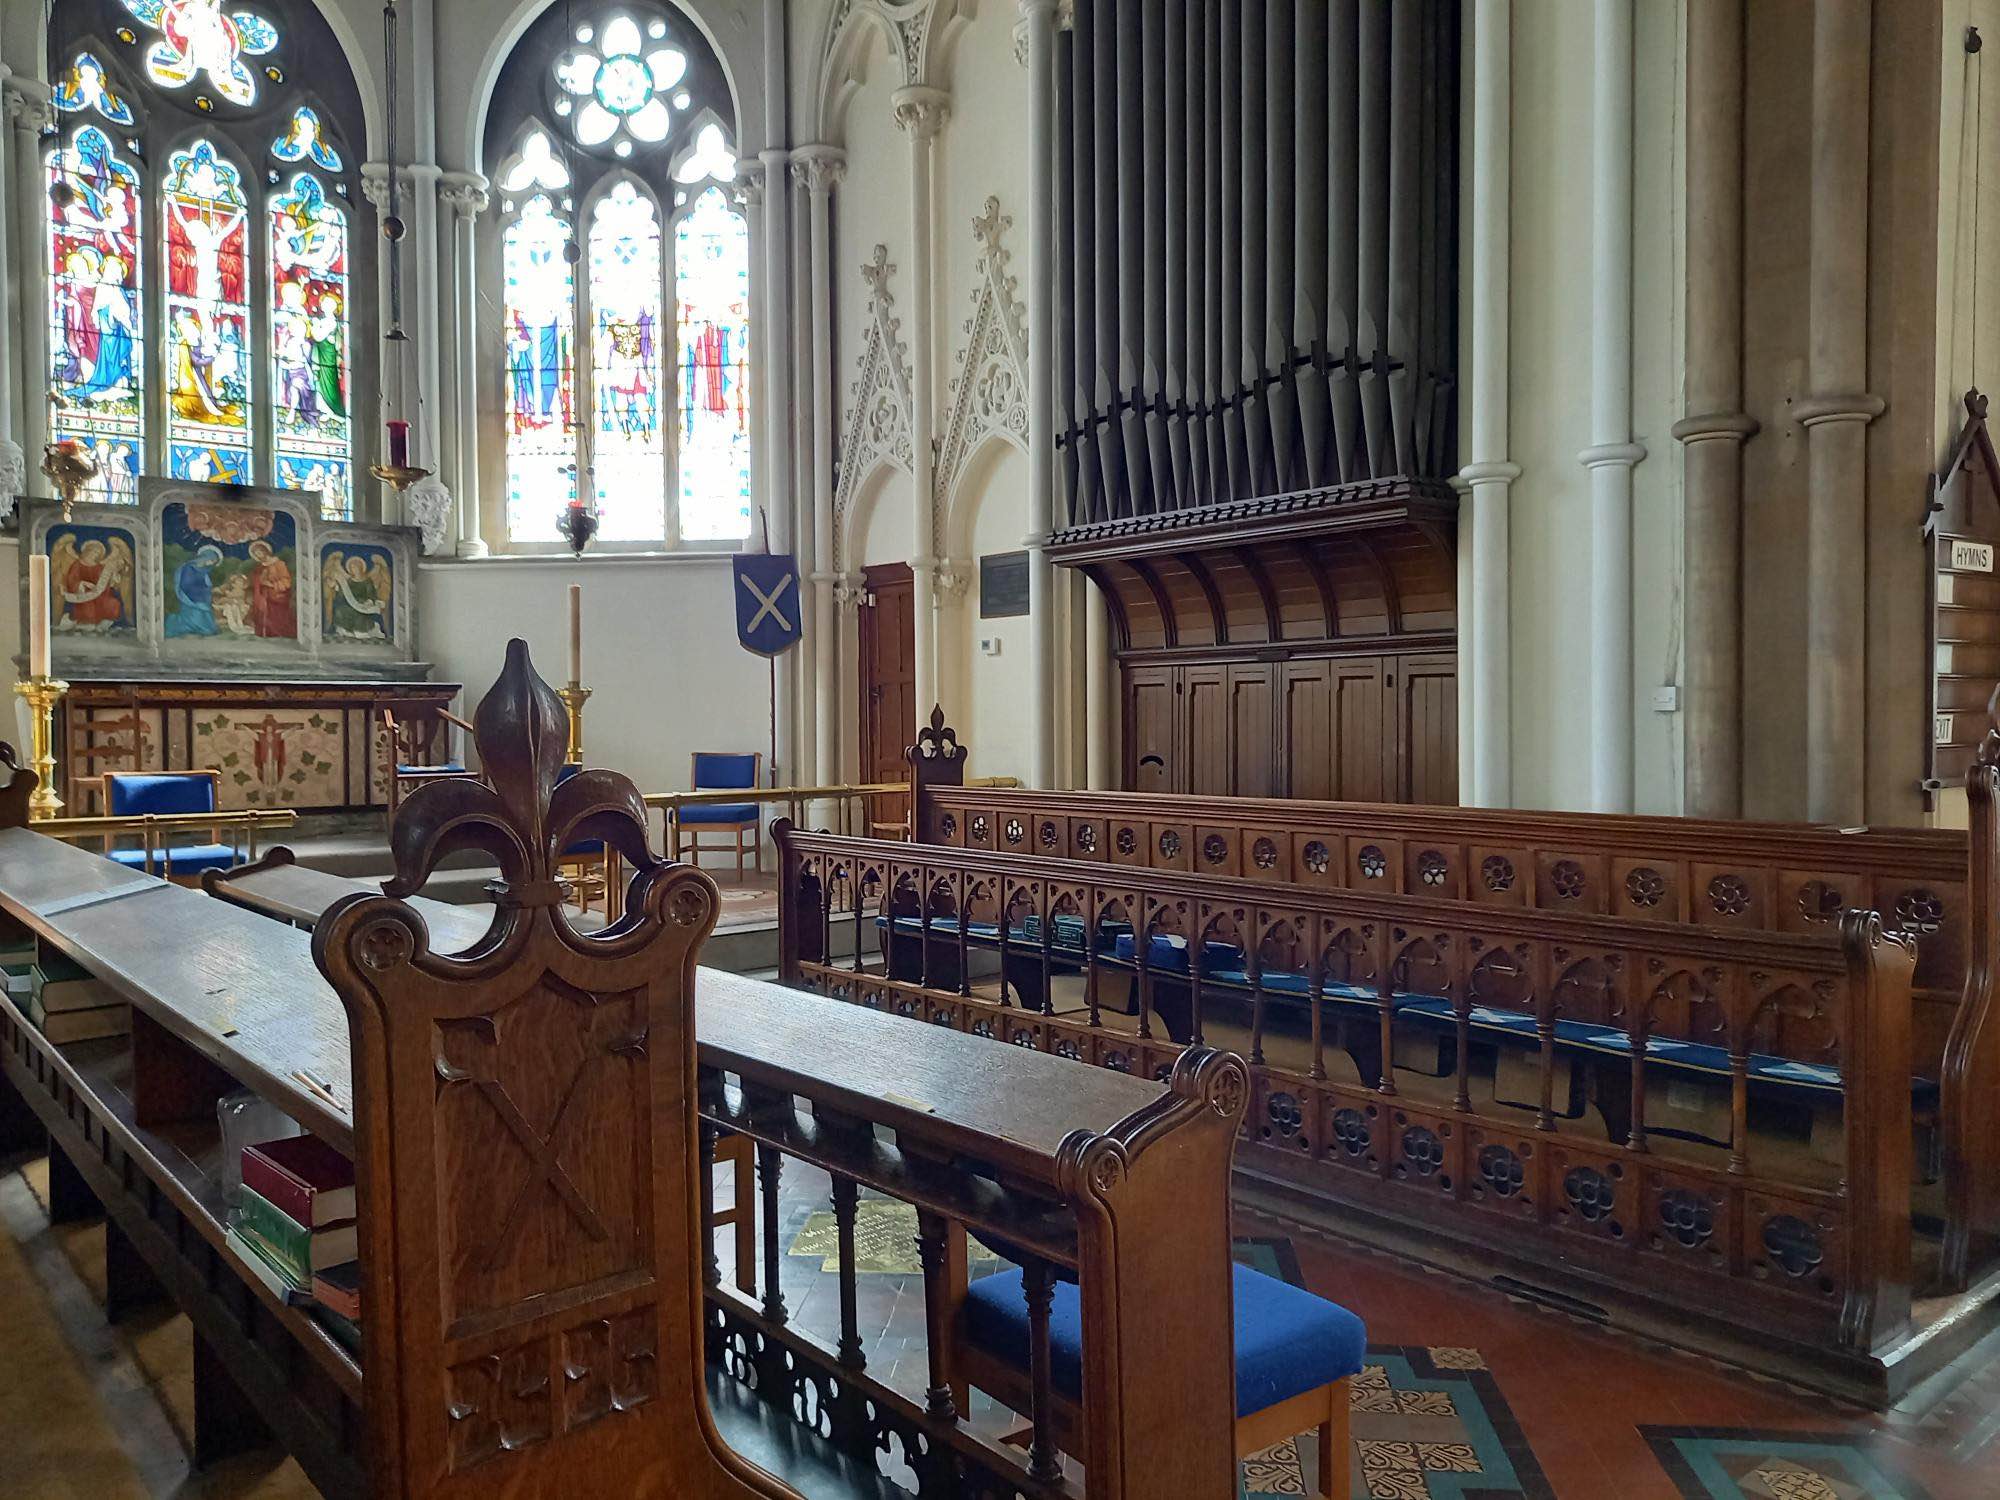 Choir stalls and organ